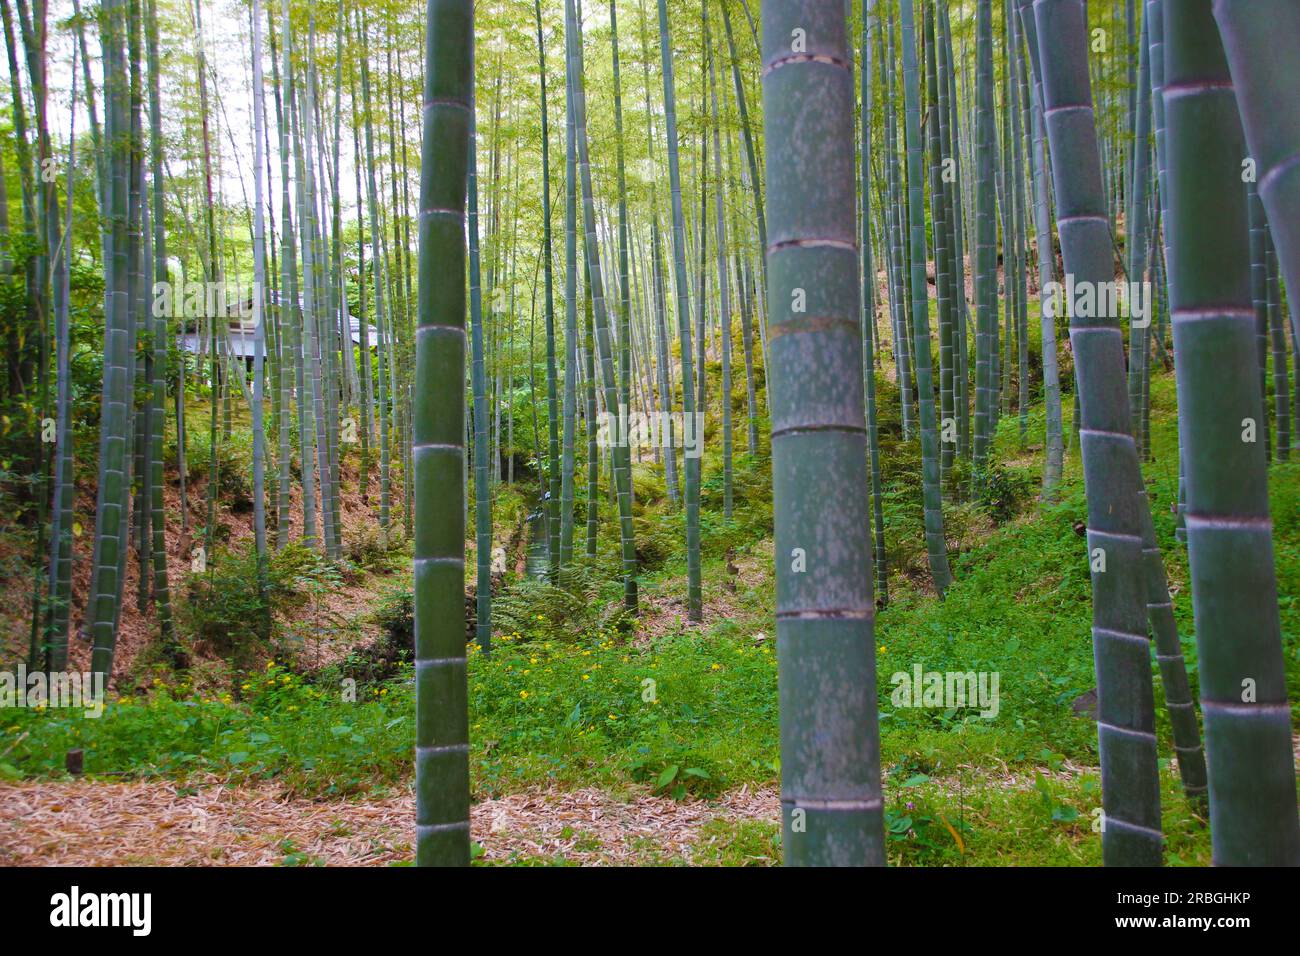 Vista dall'interno di una foresta di canne di bambù. Paesaggio caratteristico del Giappone, se sei un amante della natura e dei paesaggi selvaggi questa immagine è ideale per Foto Stock